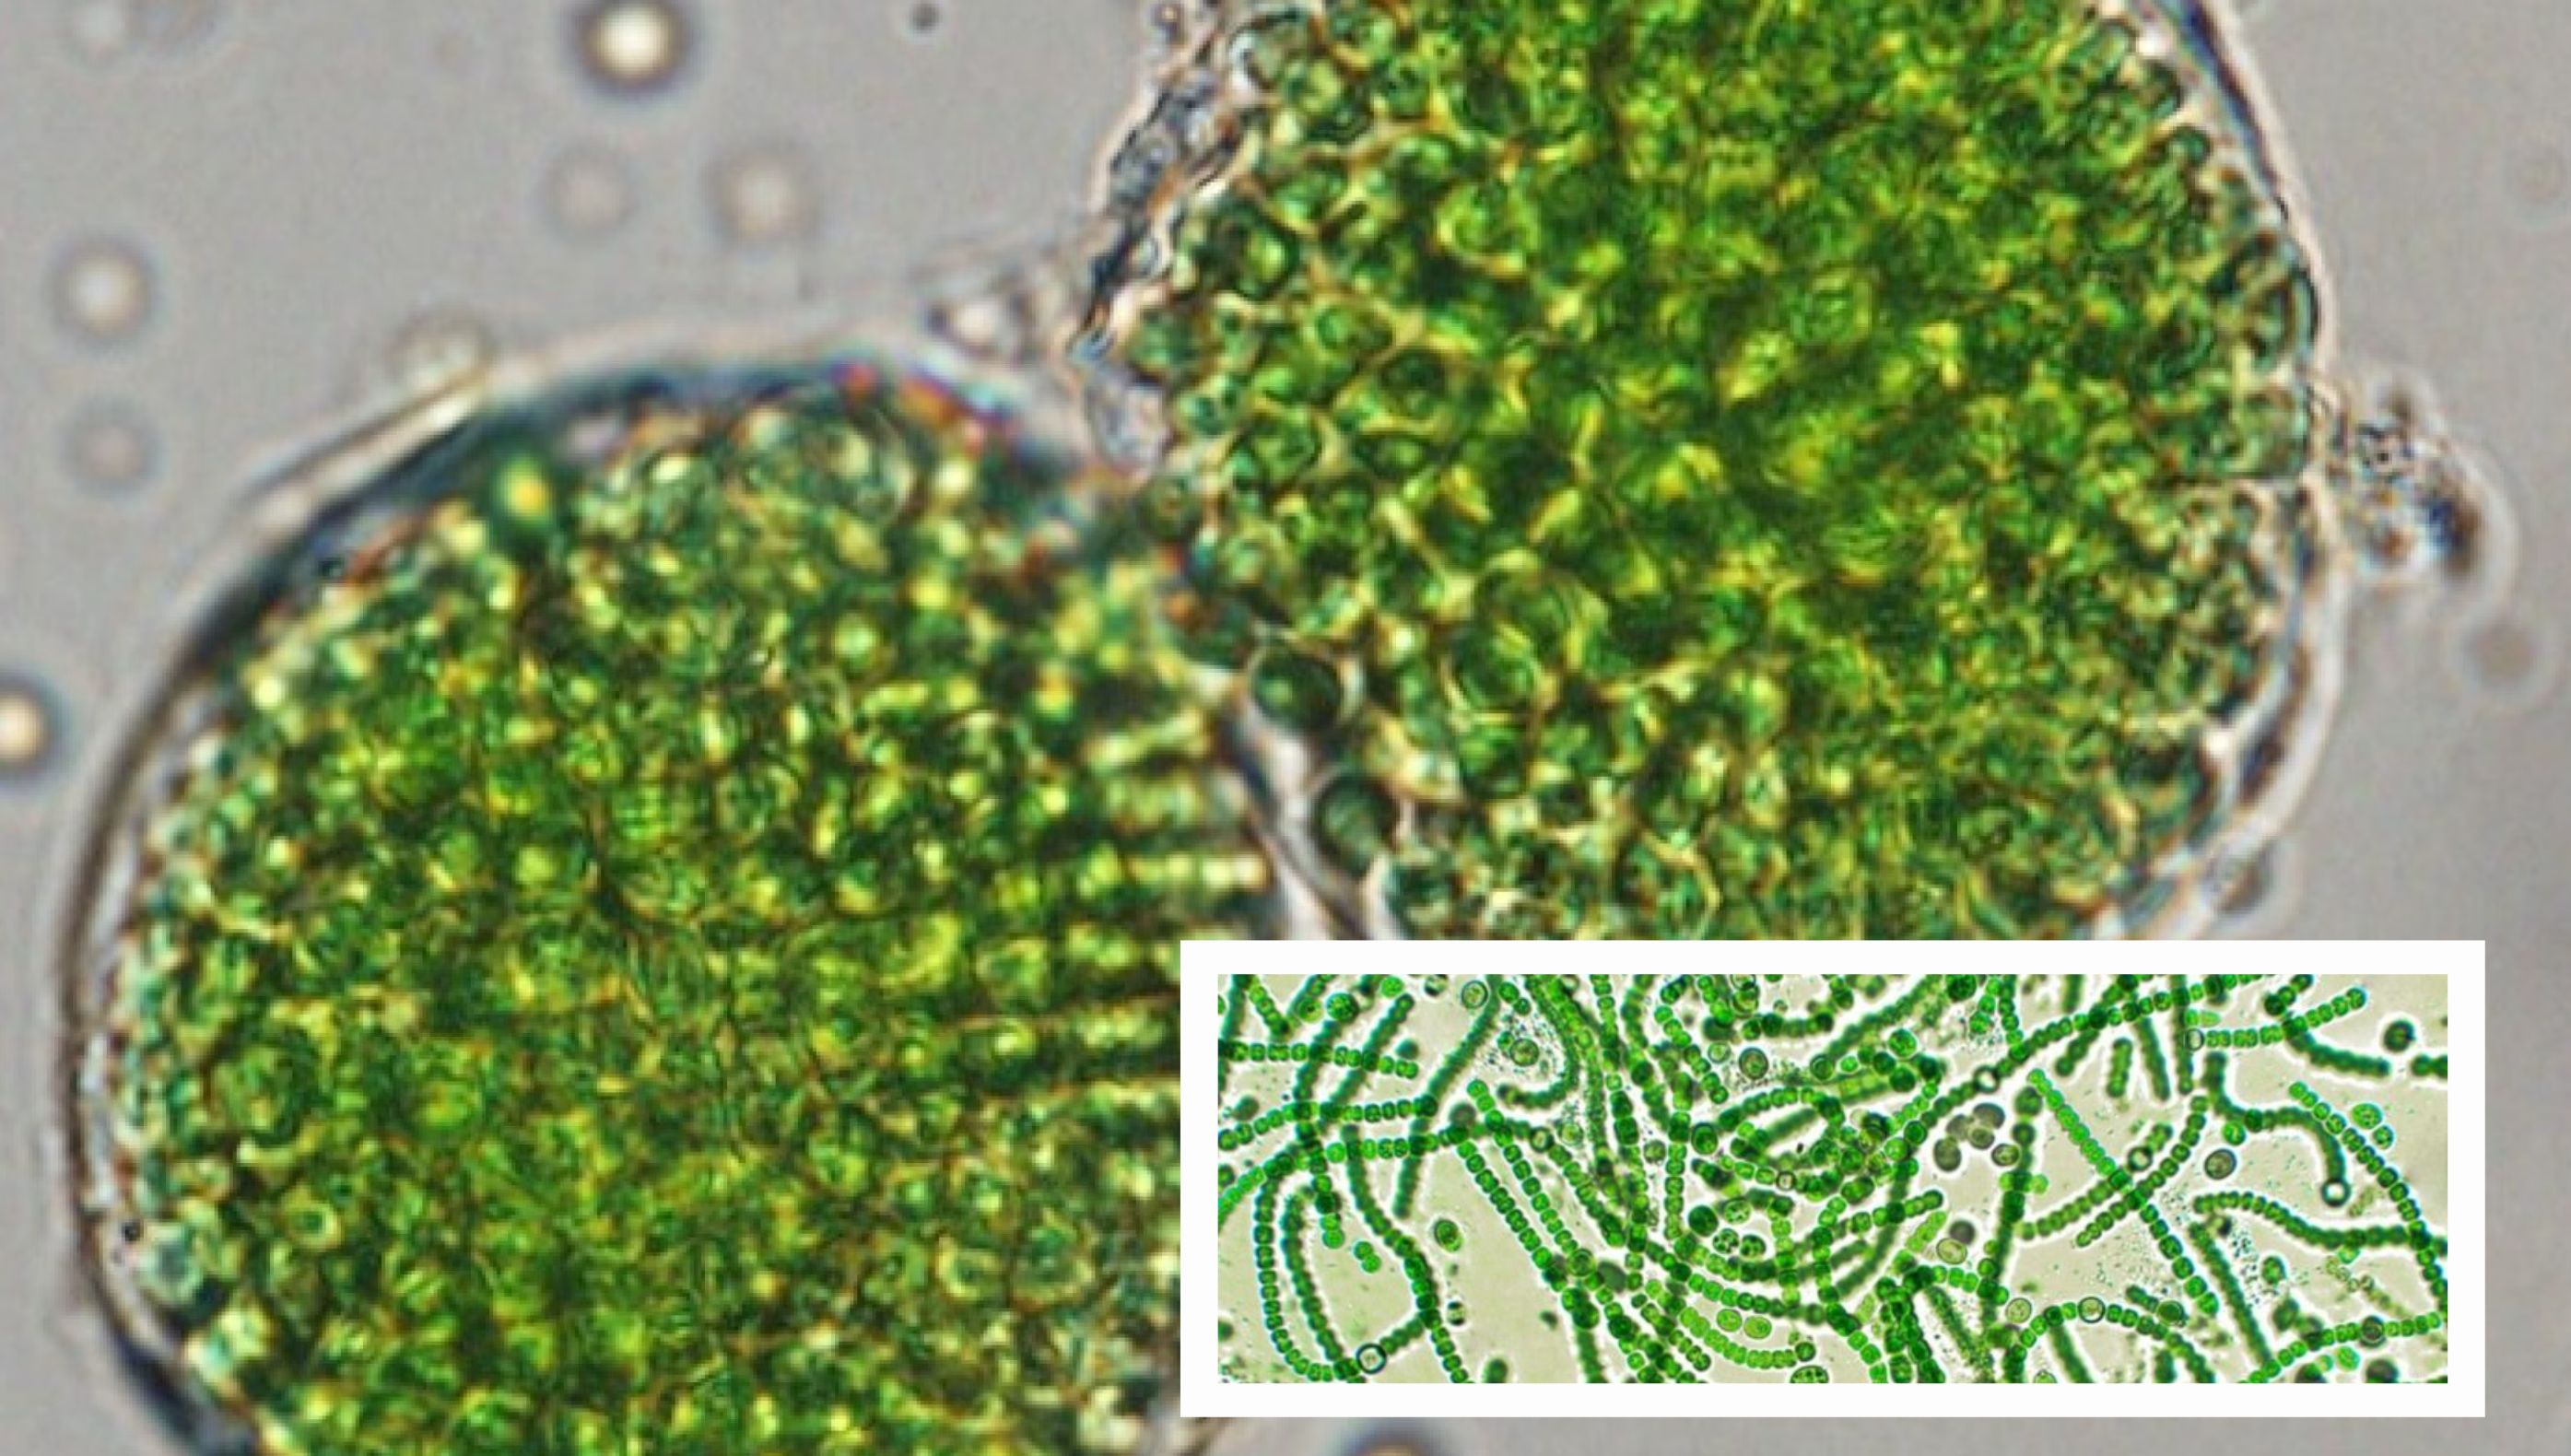 Vi khuẩn quang hợp (gọi tắt là PSB = photosynthetic bacteria)